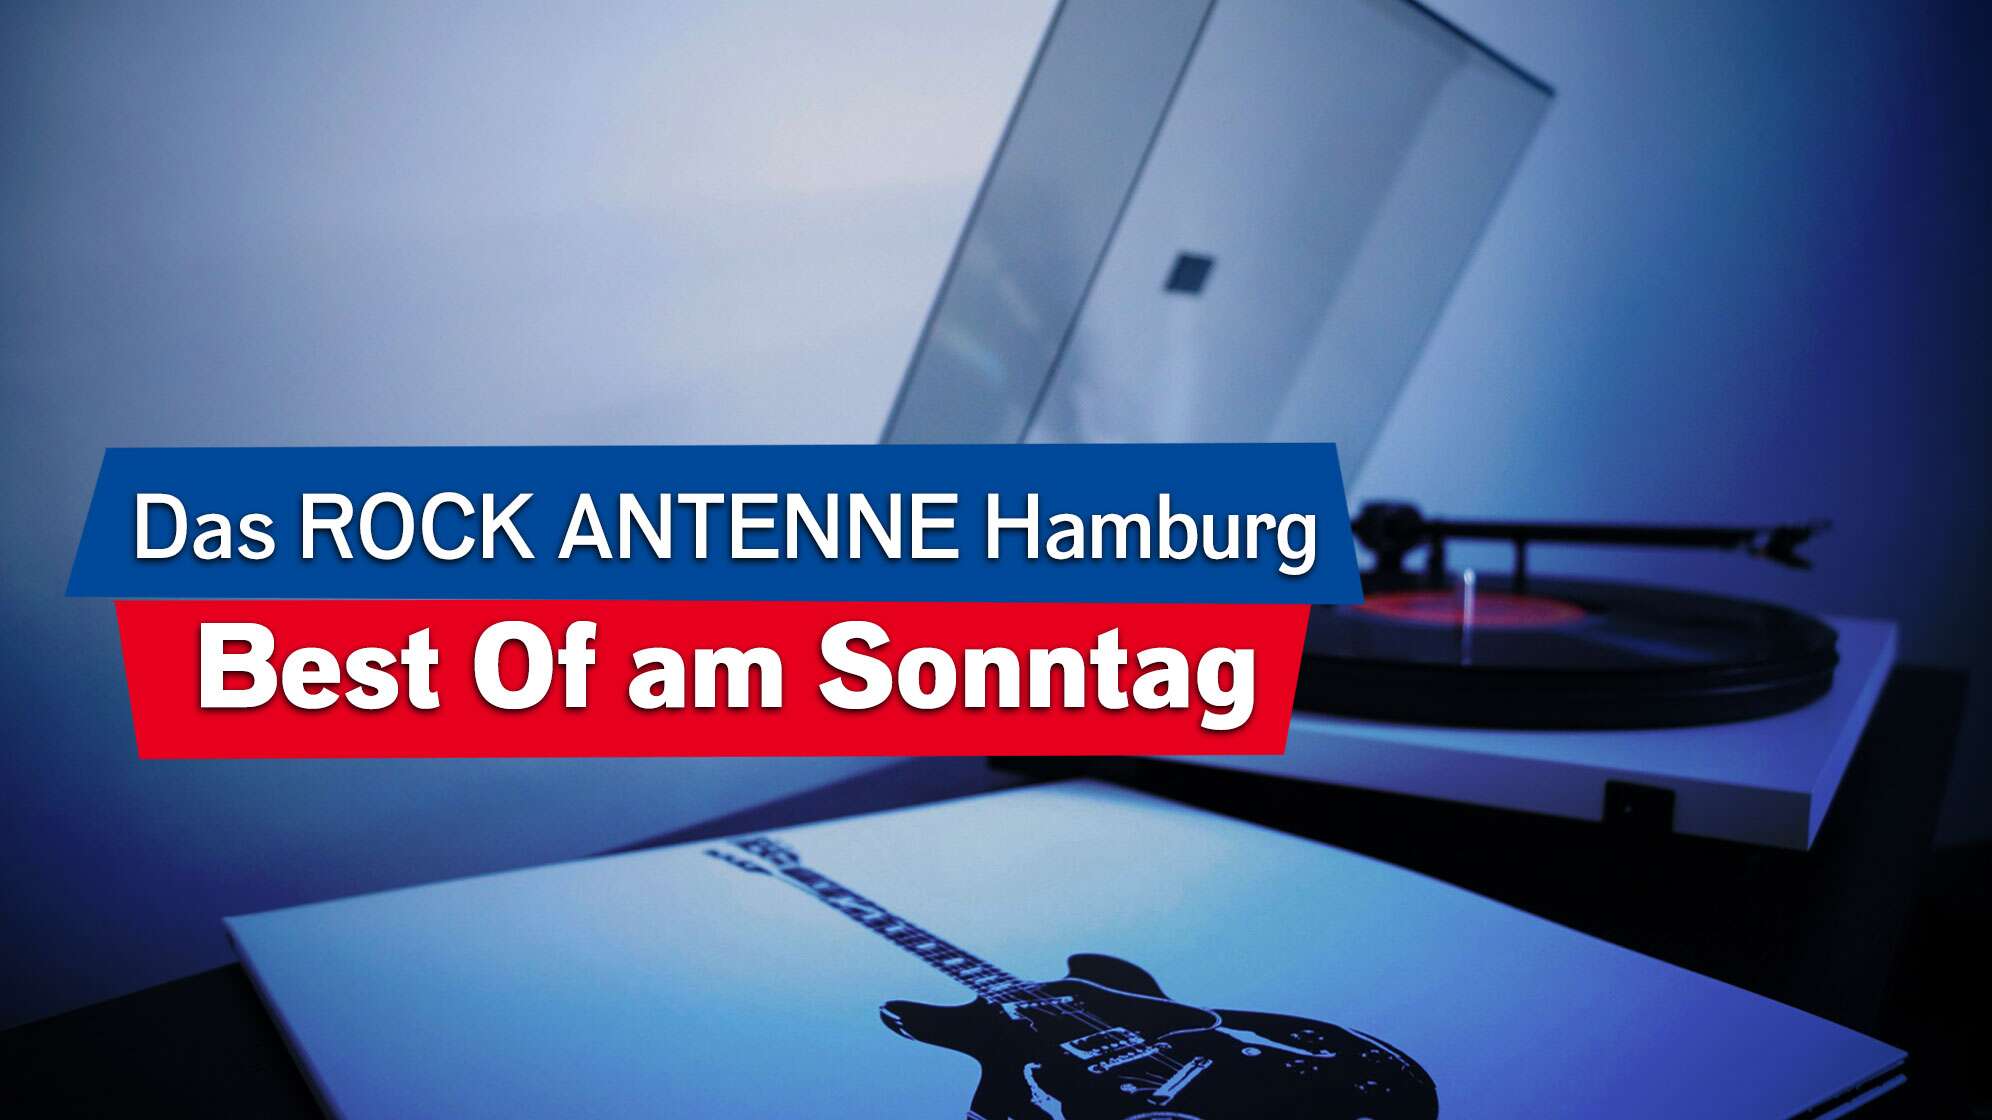 Bild von einer Platte und einem Plattenspieler, Text - Das ROCK ANTENNE Hamburg Best Of am Sonntag